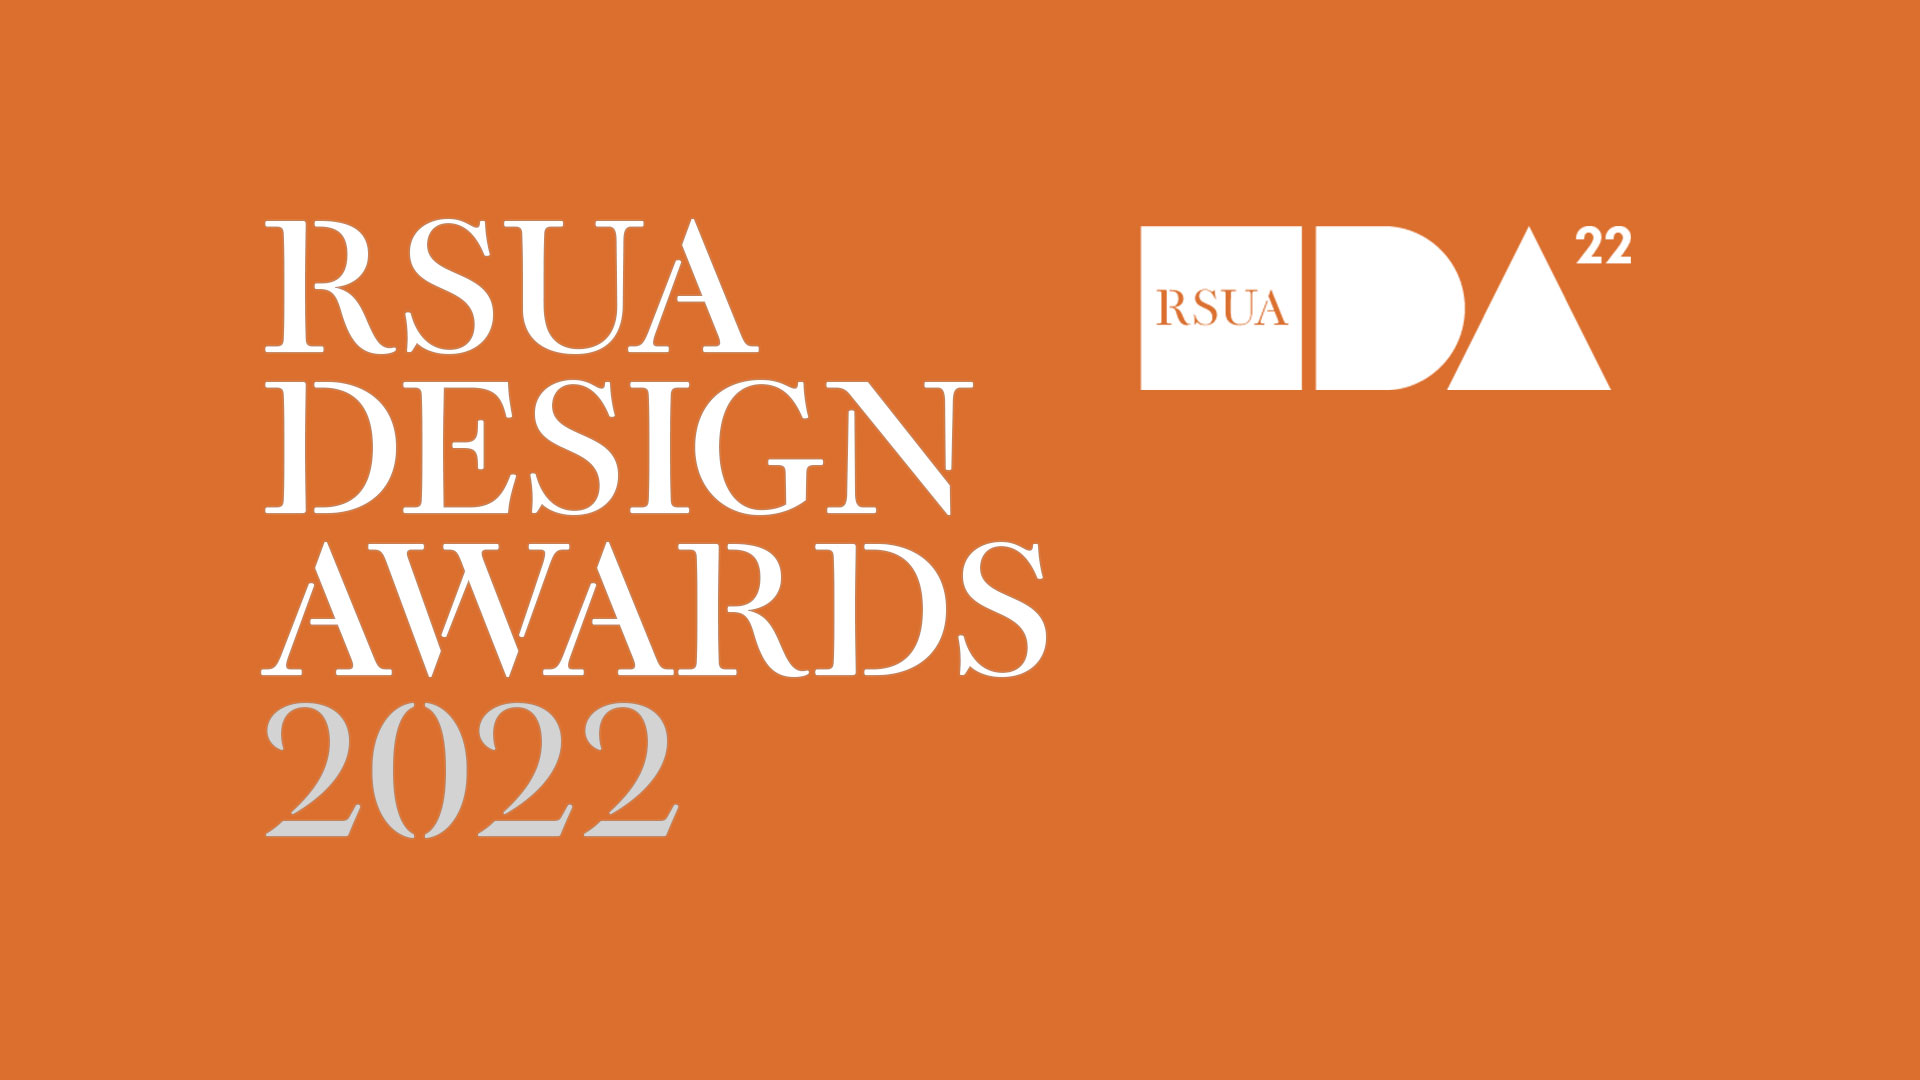 RSUA Design Awards 2022